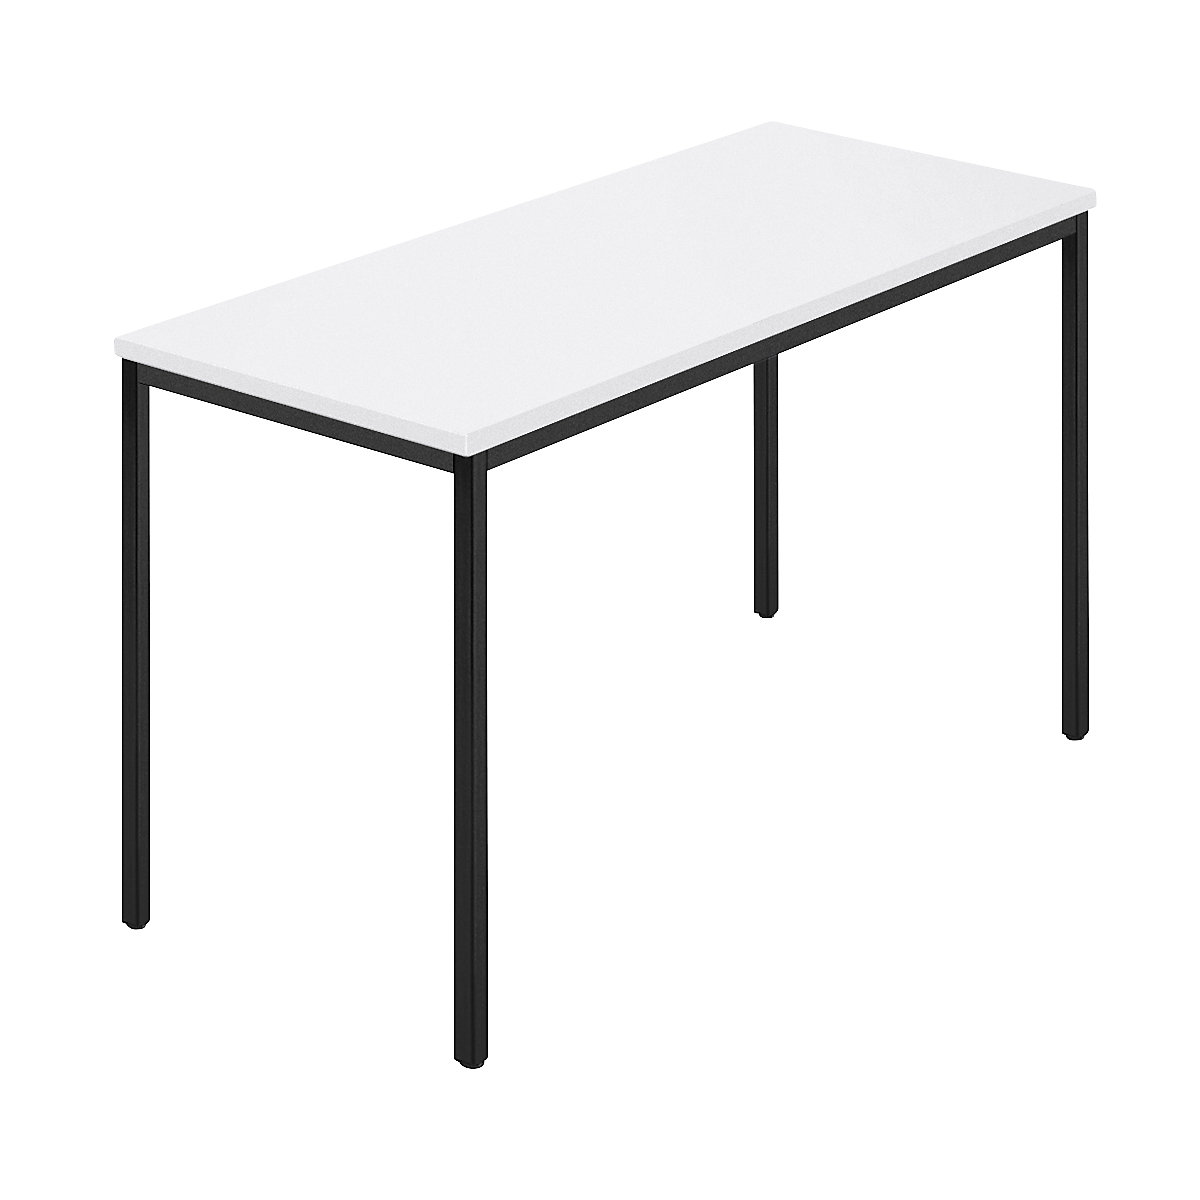 Rechthoekige tafel, vierkante buis met coating, b x d = 1200 x 600 mm, wit / antracietkleurig-5